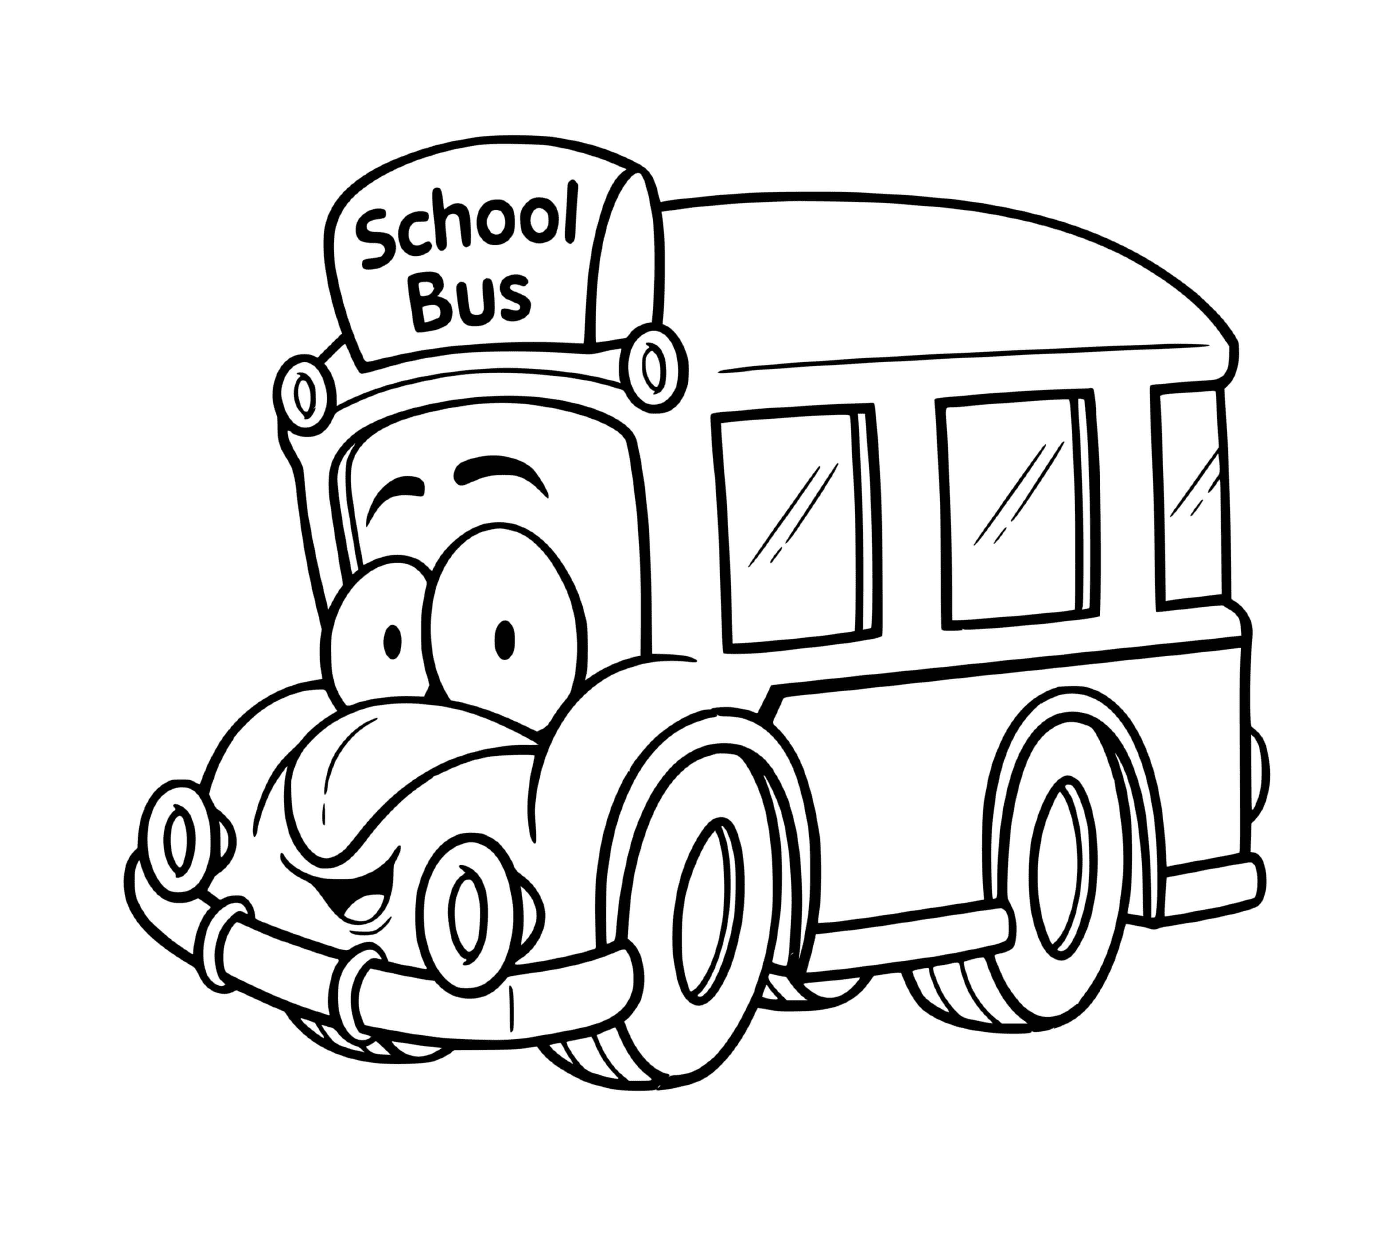  Autobus scuola per bambini 